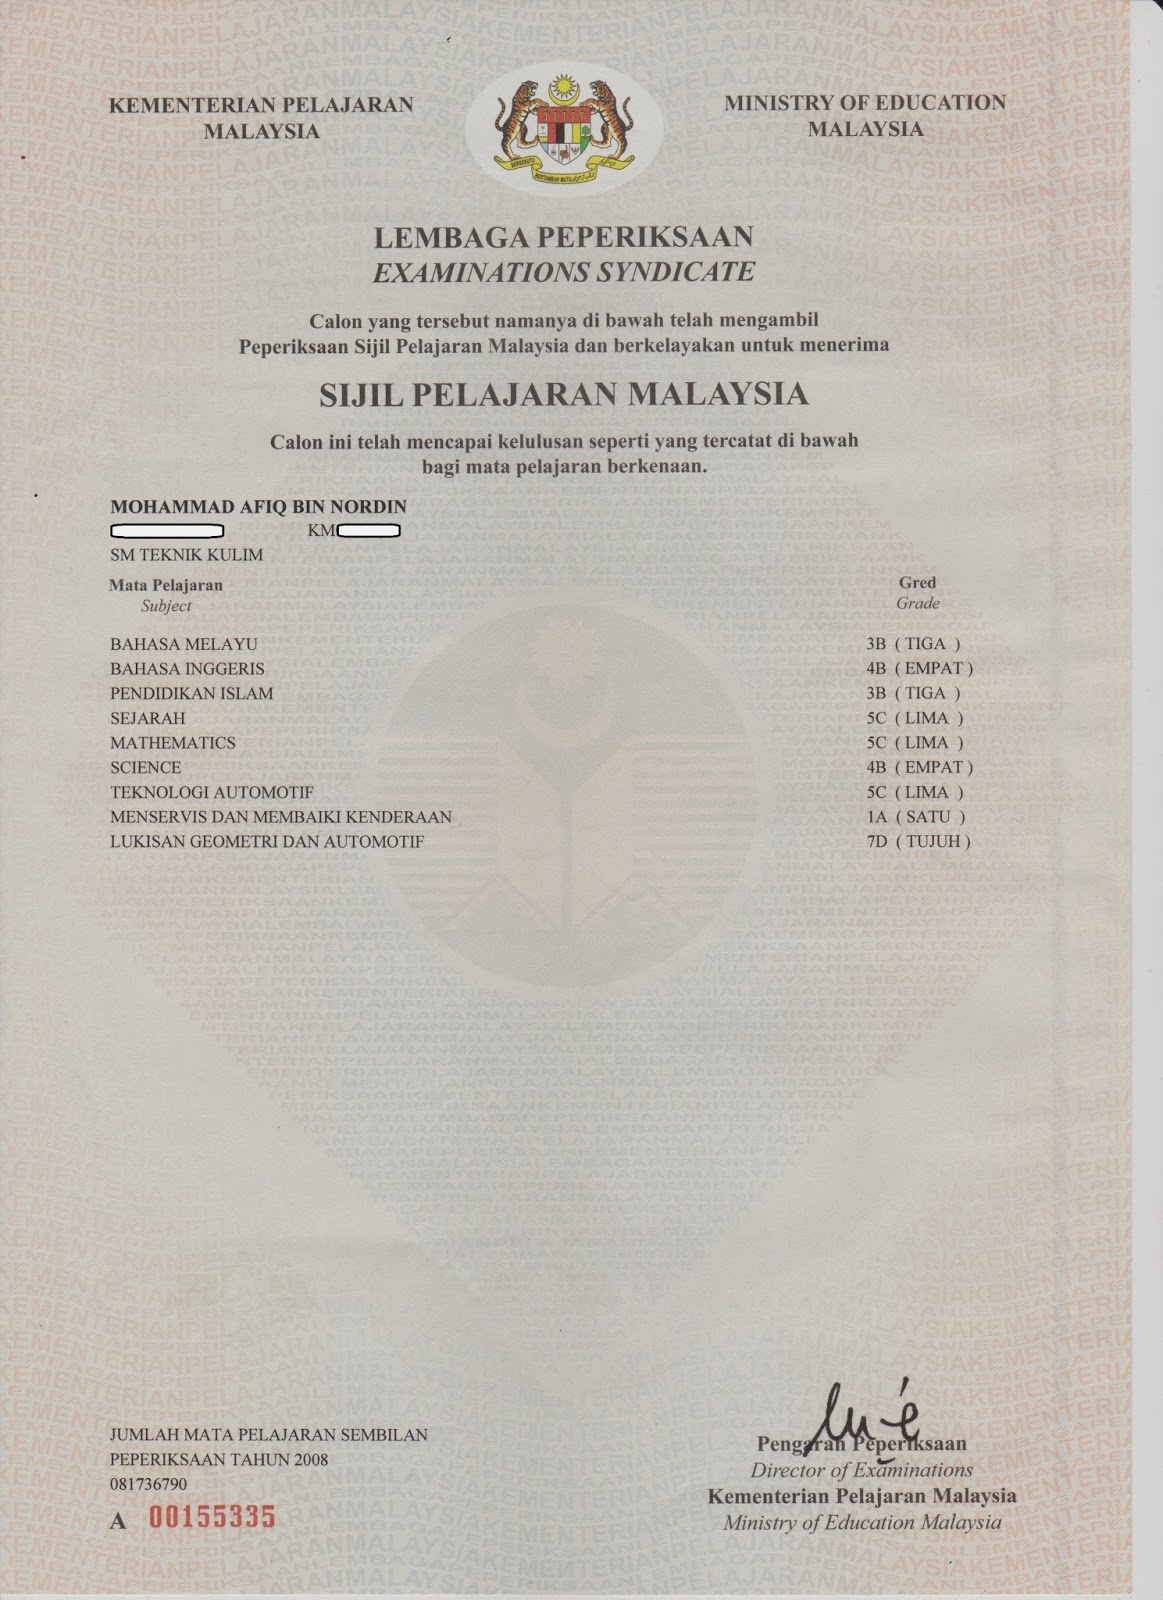 AfiqDin: my certificates